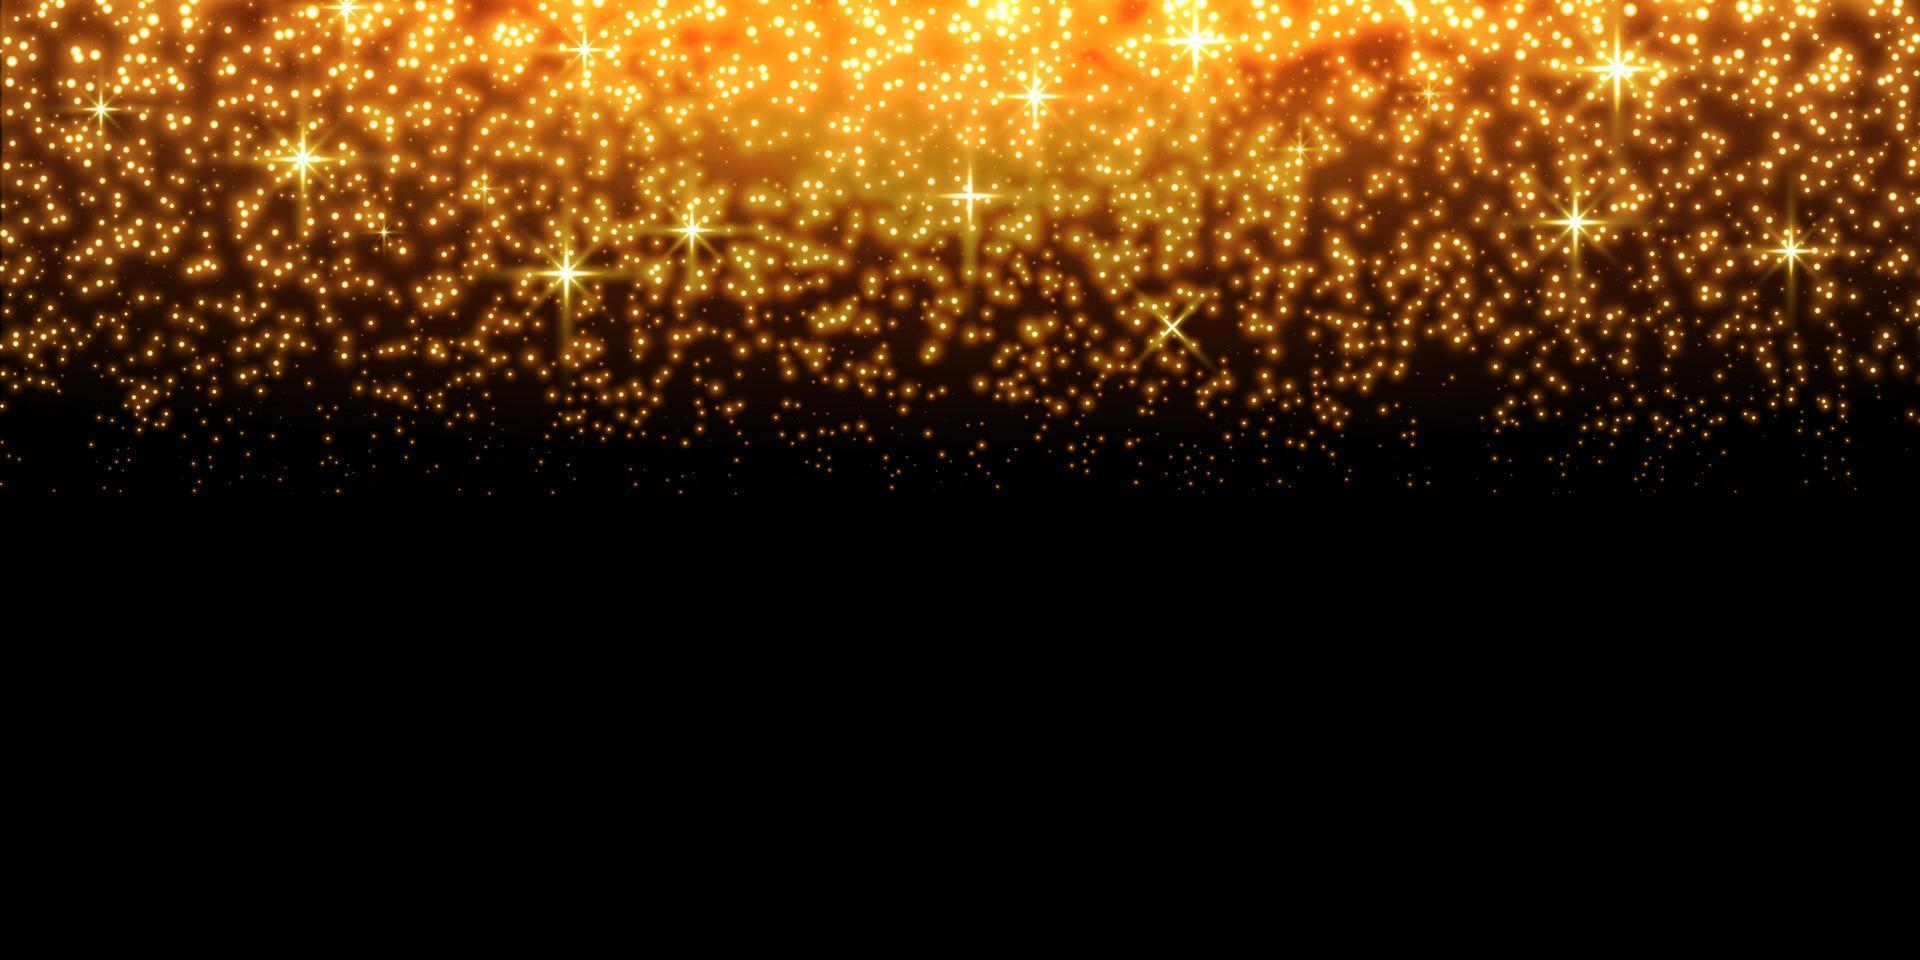 goldglitzernde punkte, funkeln, partikel und sterne auf schwarzem hintergrund. abstrakter Lichteffekt. goldene Leuchtpunkte. Vektor-Illustration. vektor